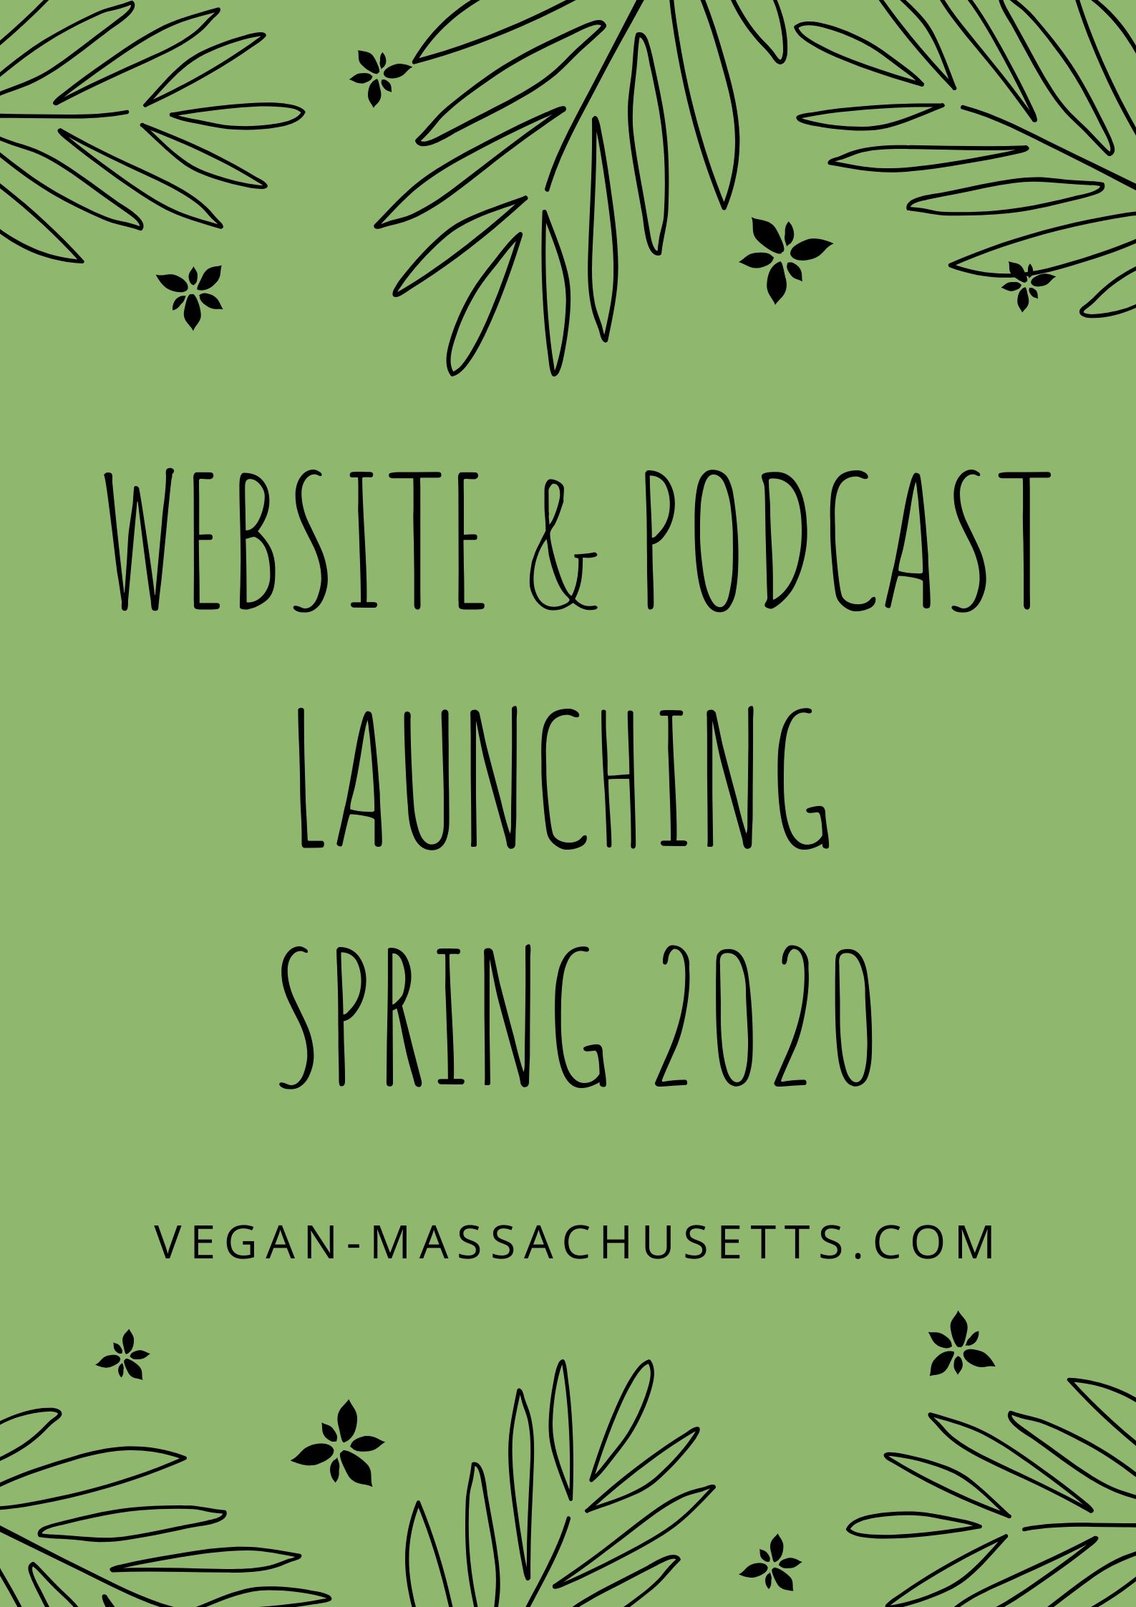 Vegan Massachusetts - Cover Image